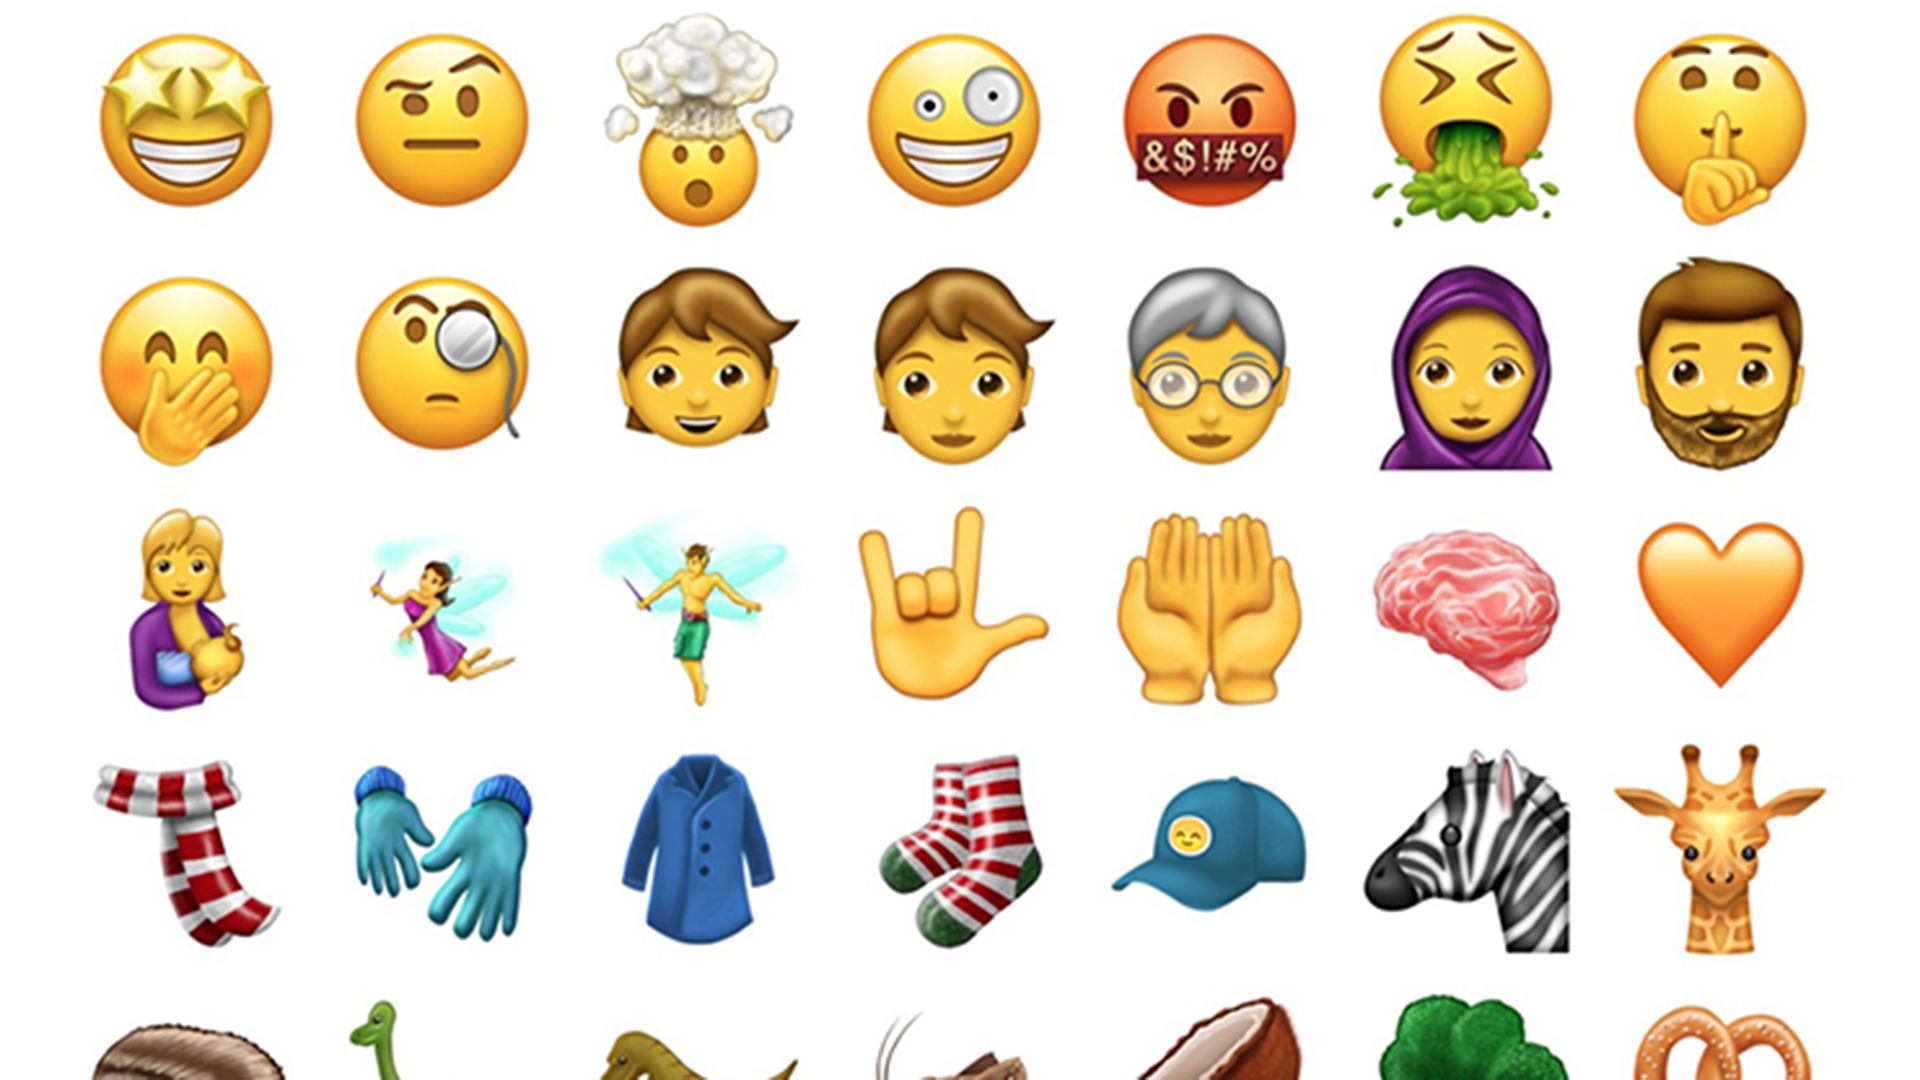 Las preguntas más comunes sobre los emojis